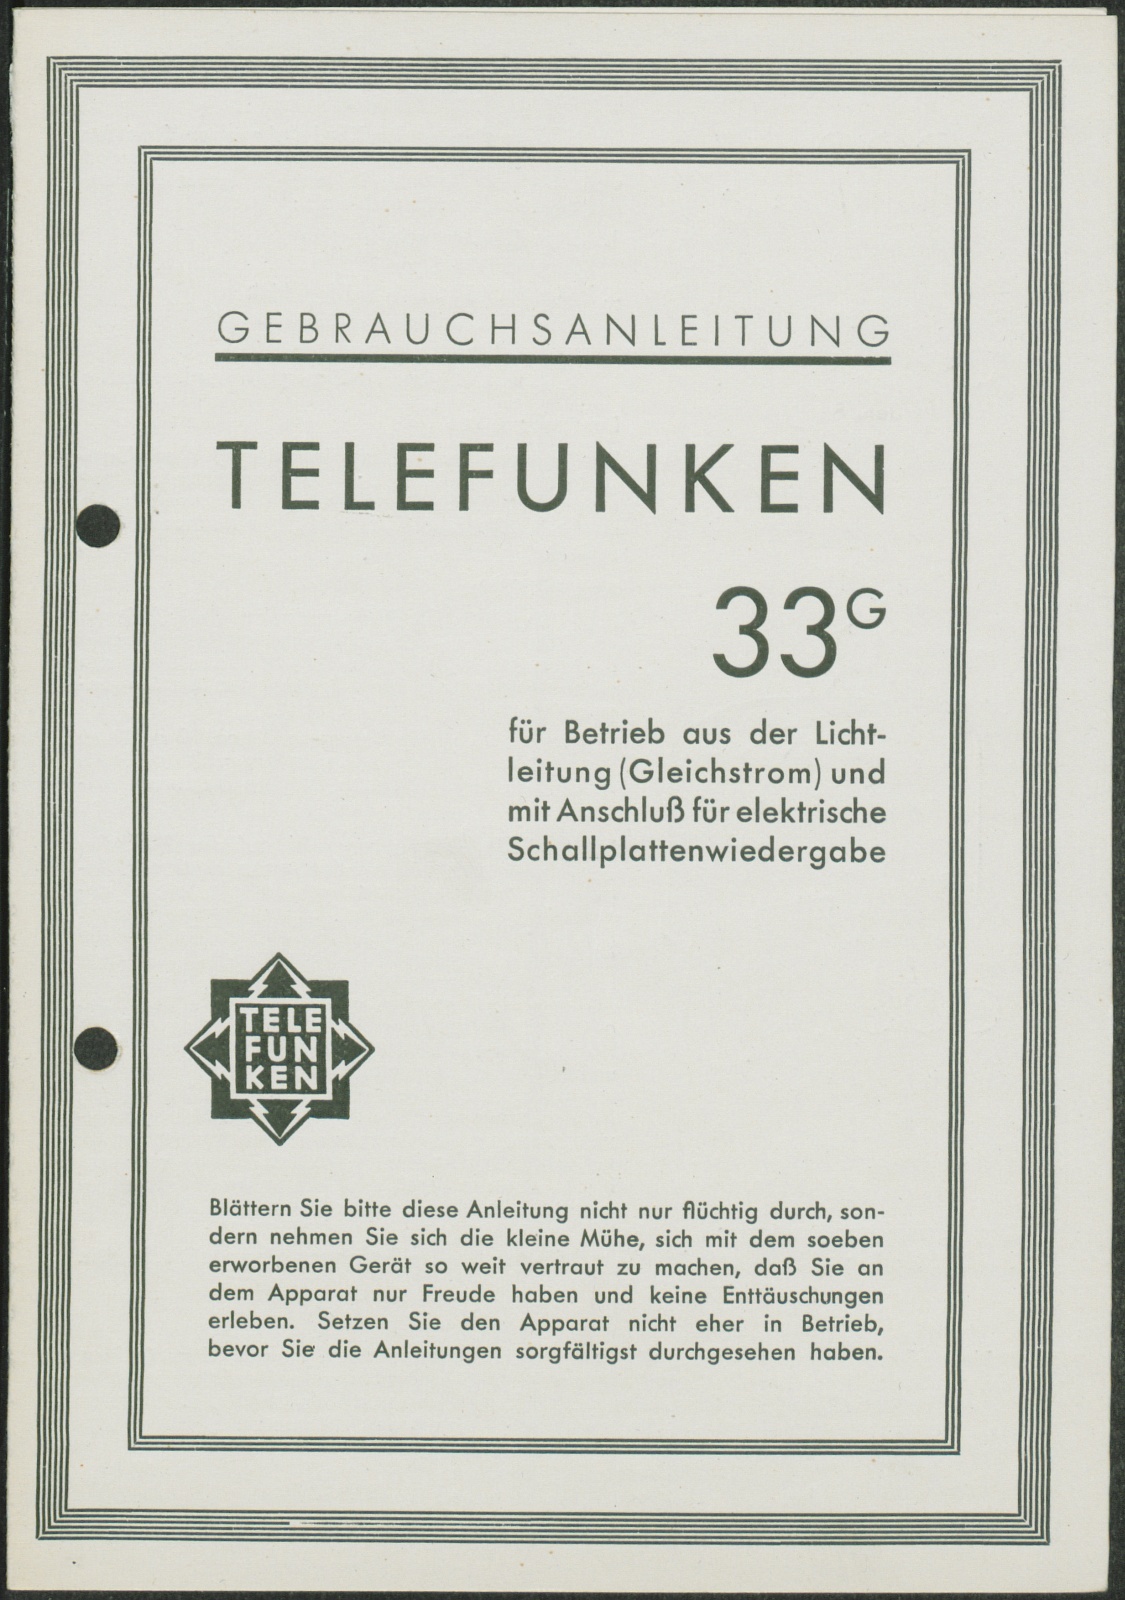 Bedienungsanleitung: Gebrauchsanleitung Telefunken 33 G (Stiftung Deutsches Technikmuseum Berlin CC0)